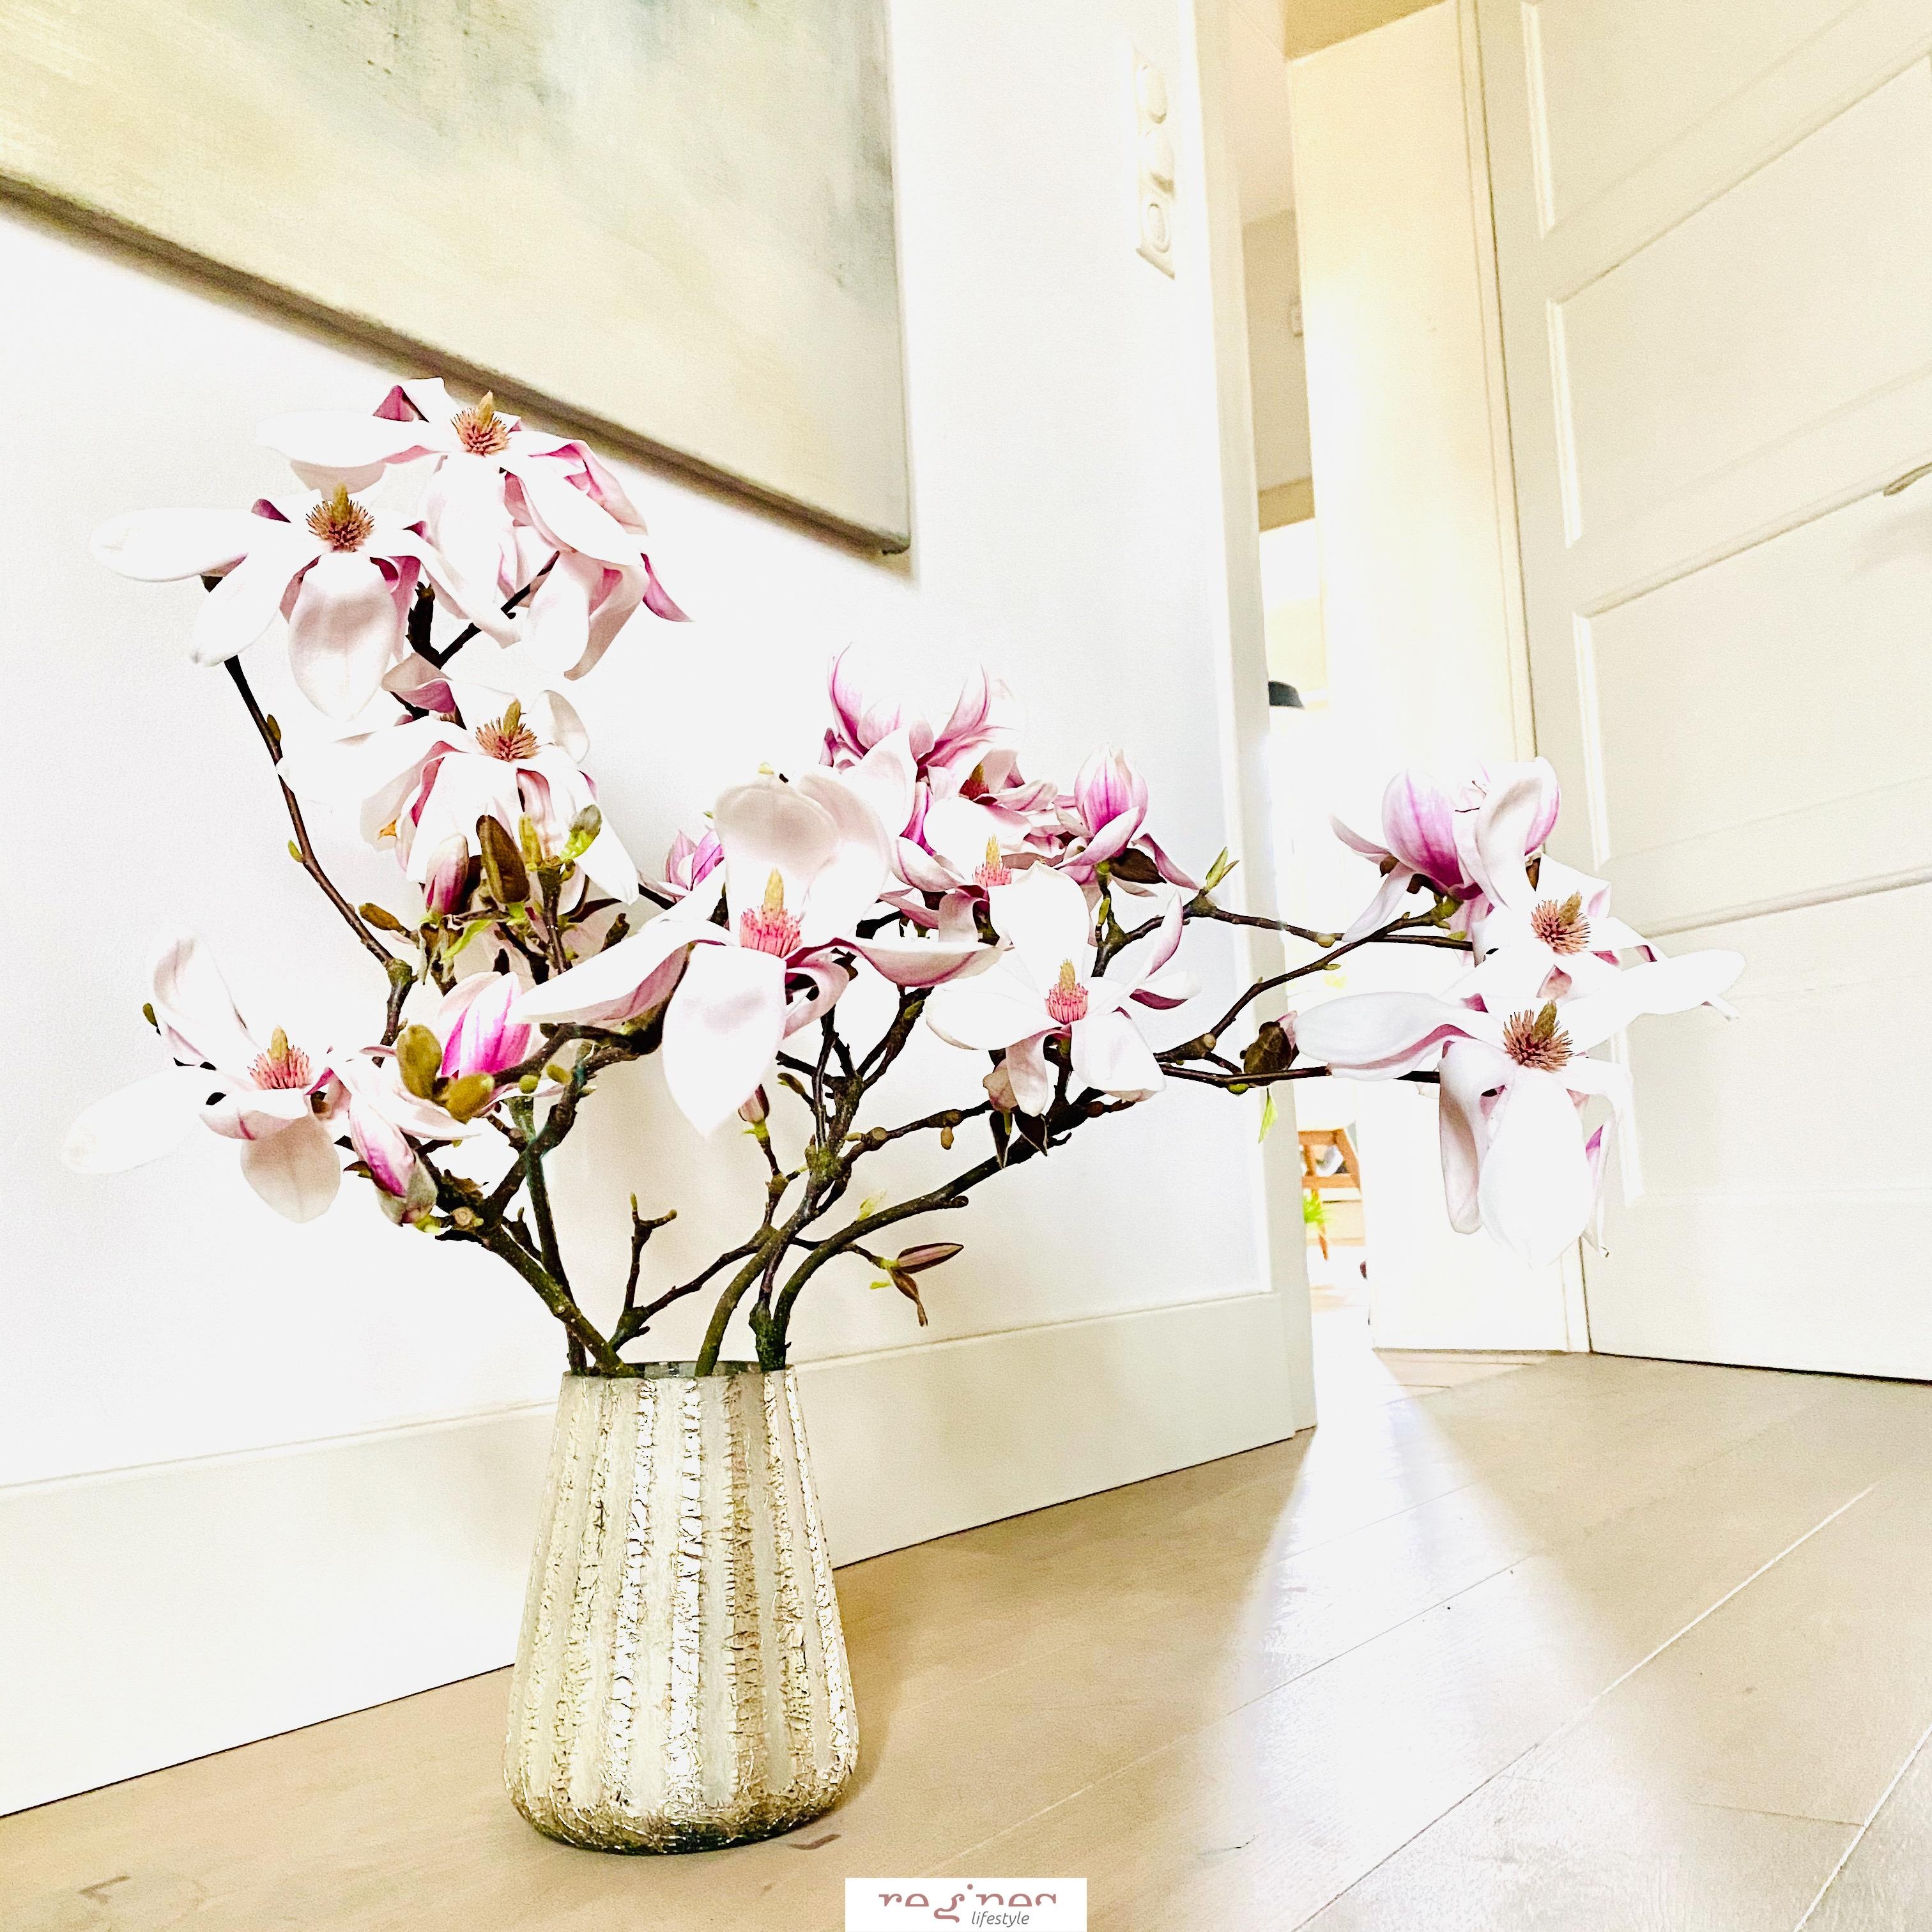 Magnolienliebe über Alles ...
#skandistyle #freshflowers #magnolie #whiteliving #holzfussboden #pink #blumenliebe 